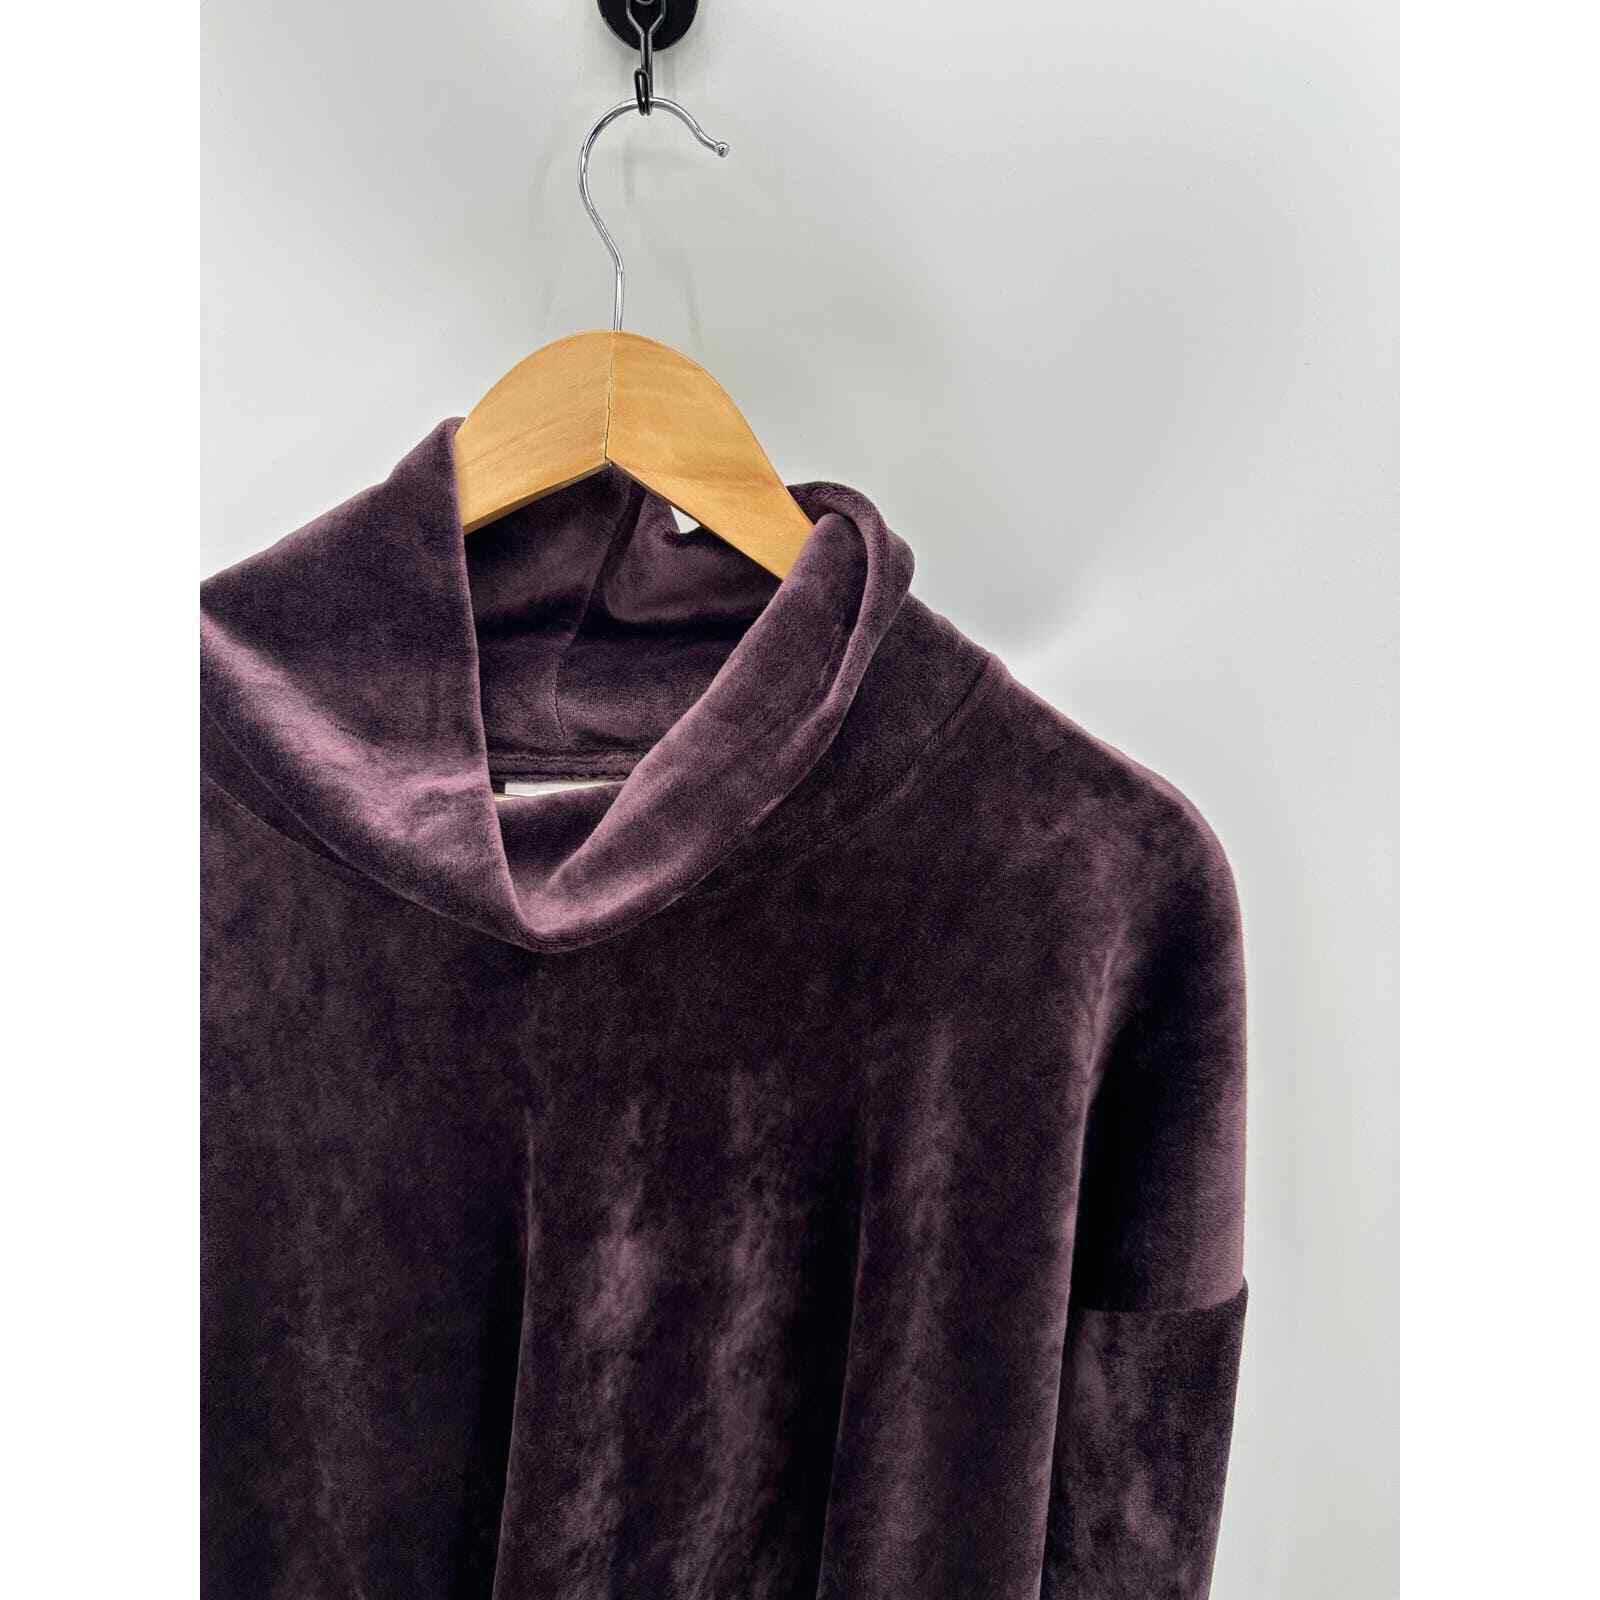 J. Jill Top Women LARGE Purple Velour Long Sleeve… - image 4